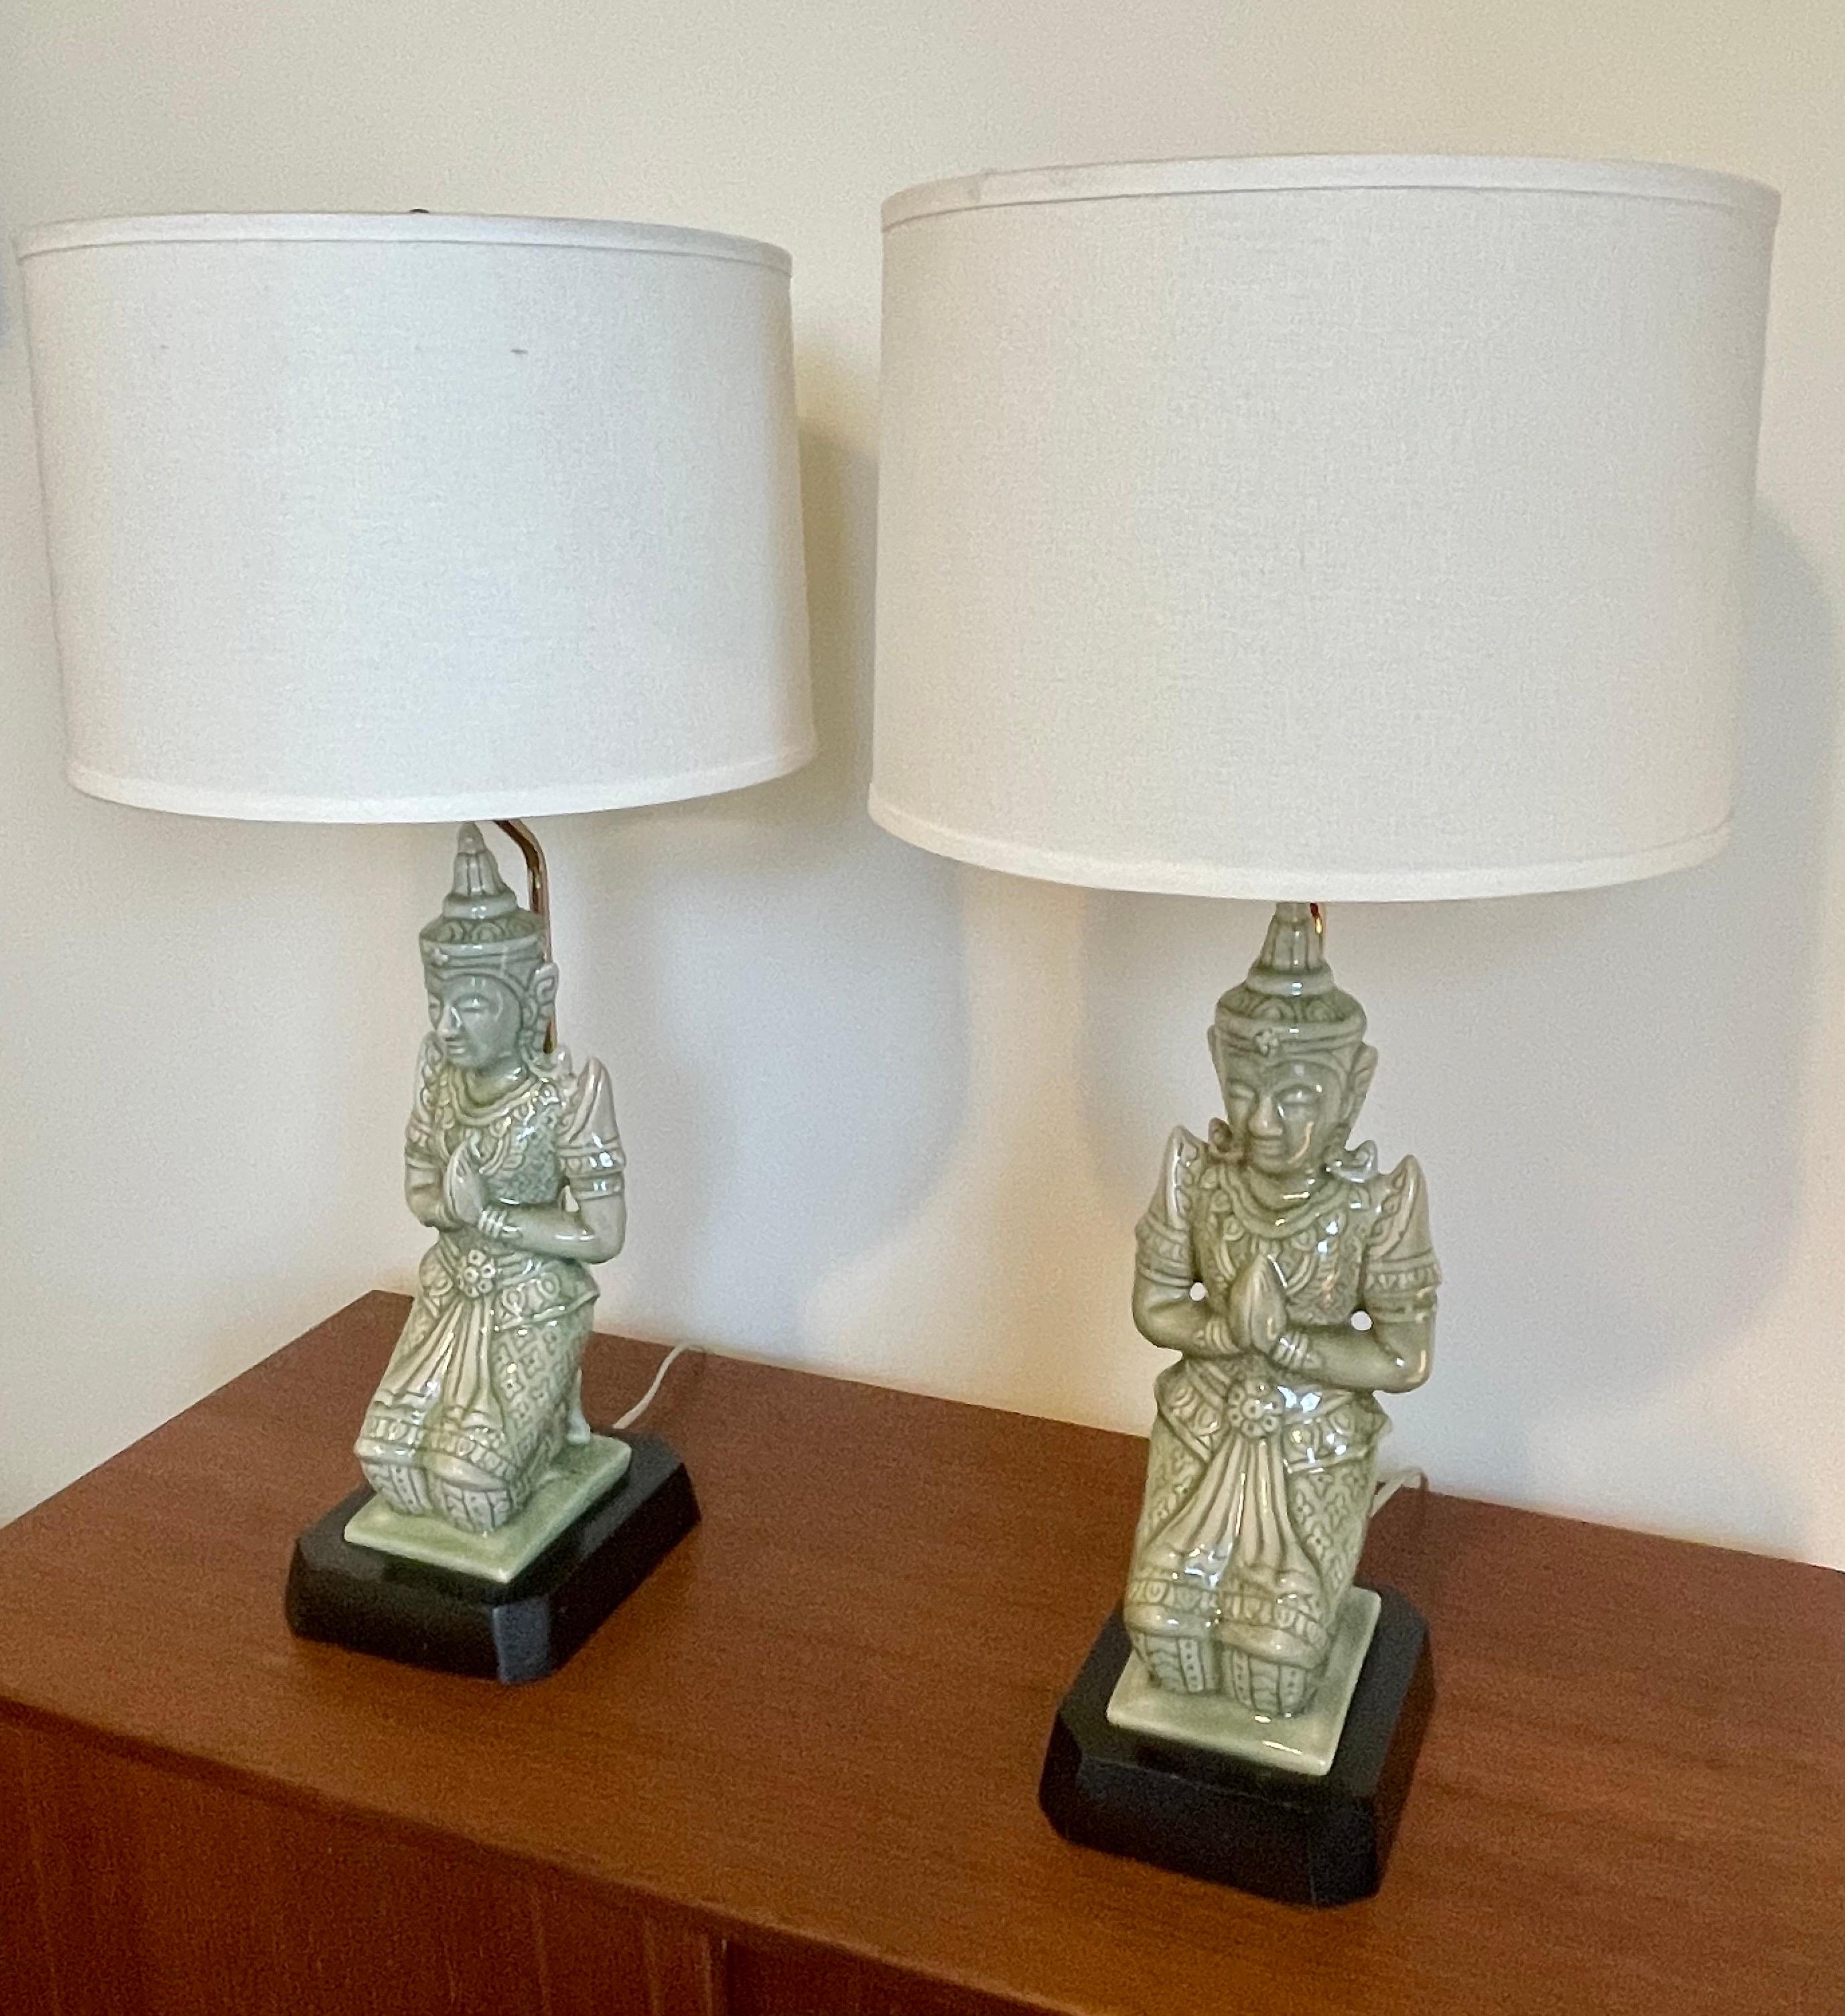 Fantastique paire de lampes de table Bouddha assis du milieu du siècle, belle porcelaine vert menthe, reconnectée professionnellement et les abat-jour sont inclus. Mesures : 24.50 pouces au sommet de l'abat-jour, 20' au sommet de la prise.